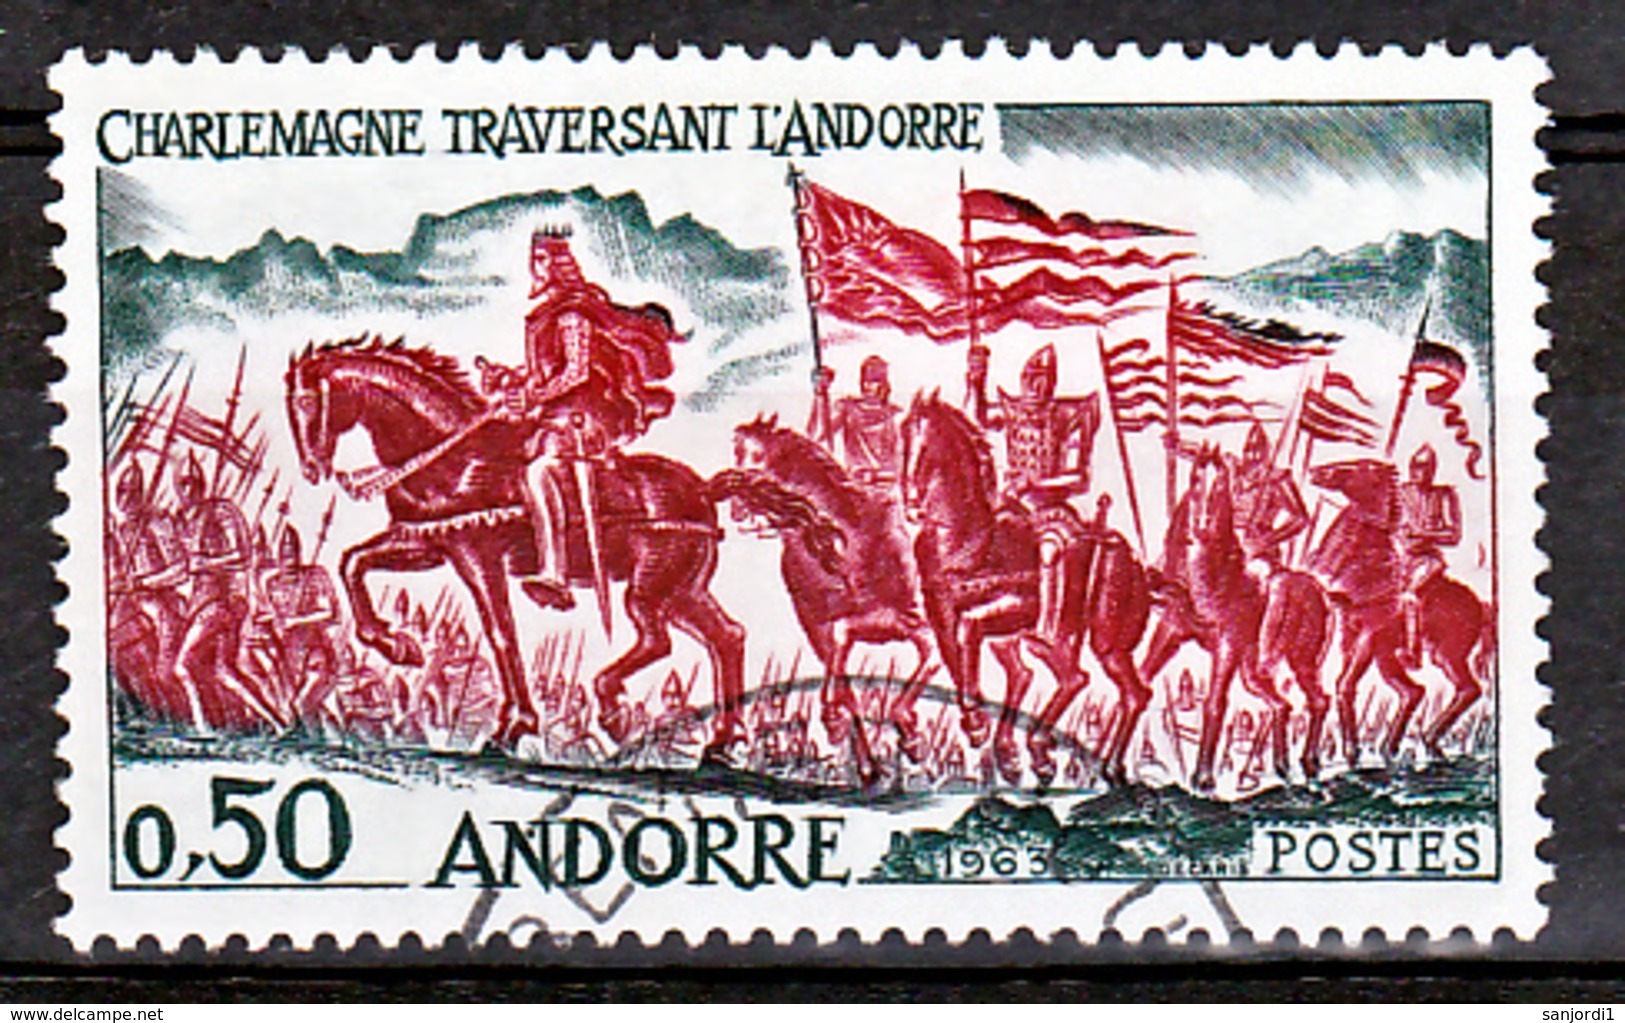 Andorre 167 Charlemagne Traversant Les Pyrénées Oblitéré Used Cote 11 - Oblitérés